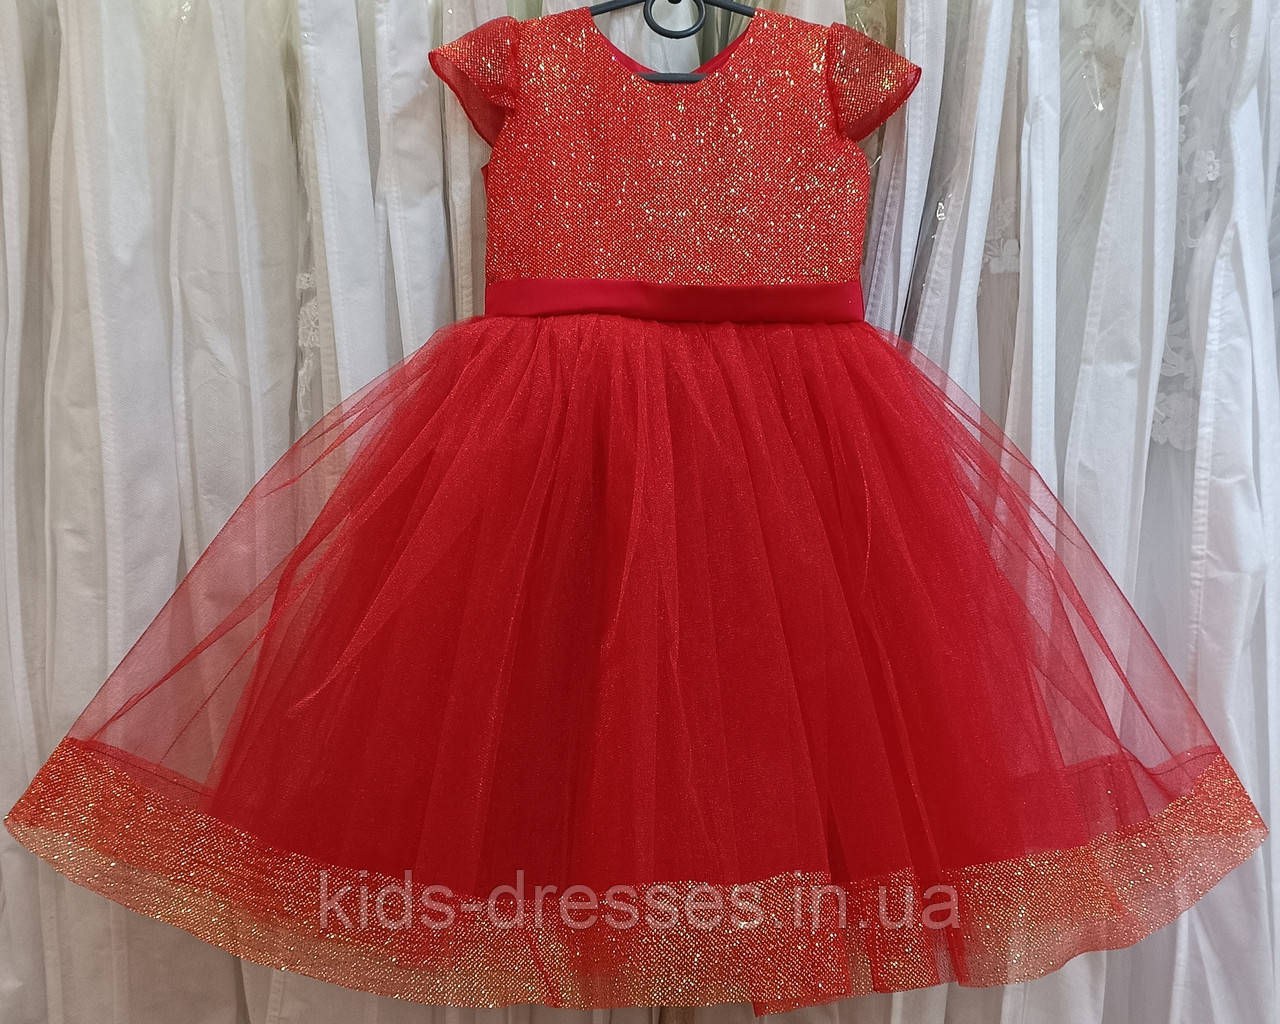 Блискуча червона ошатна дитяча сукня з коротким рукавчиком на 3-4 рочки